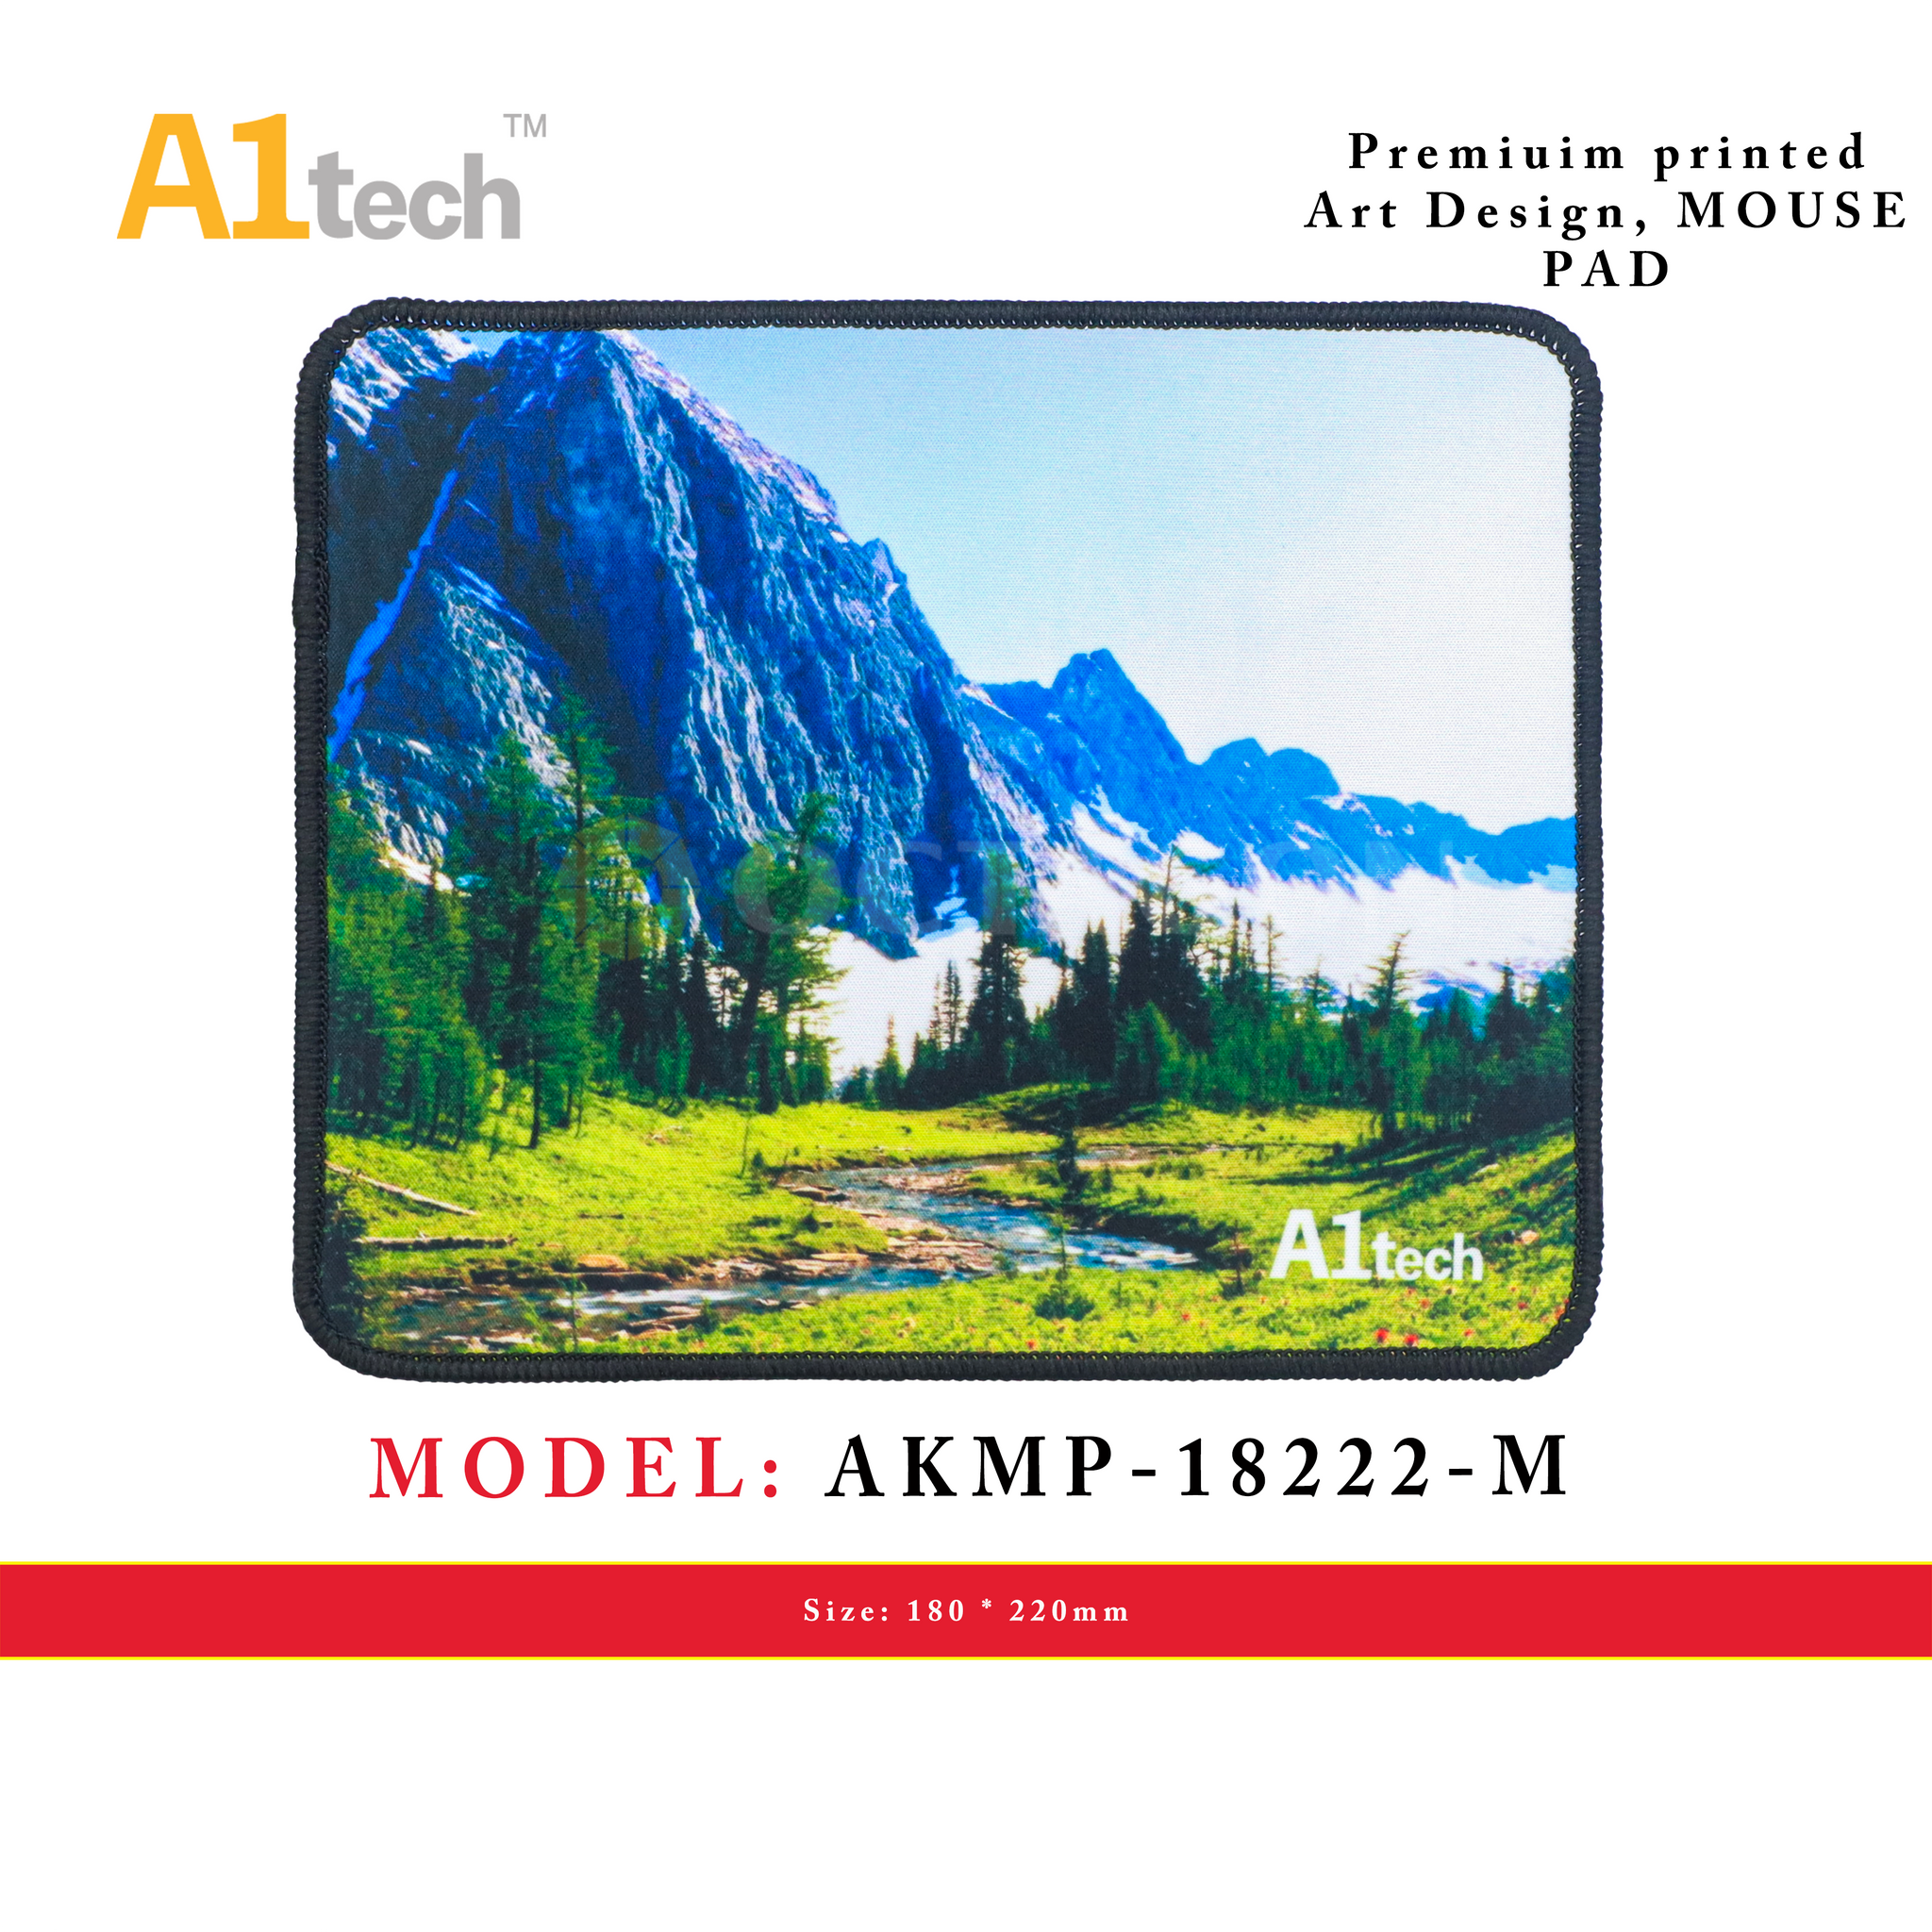 A1TECH AKMP-18222-M MOUSE PAD